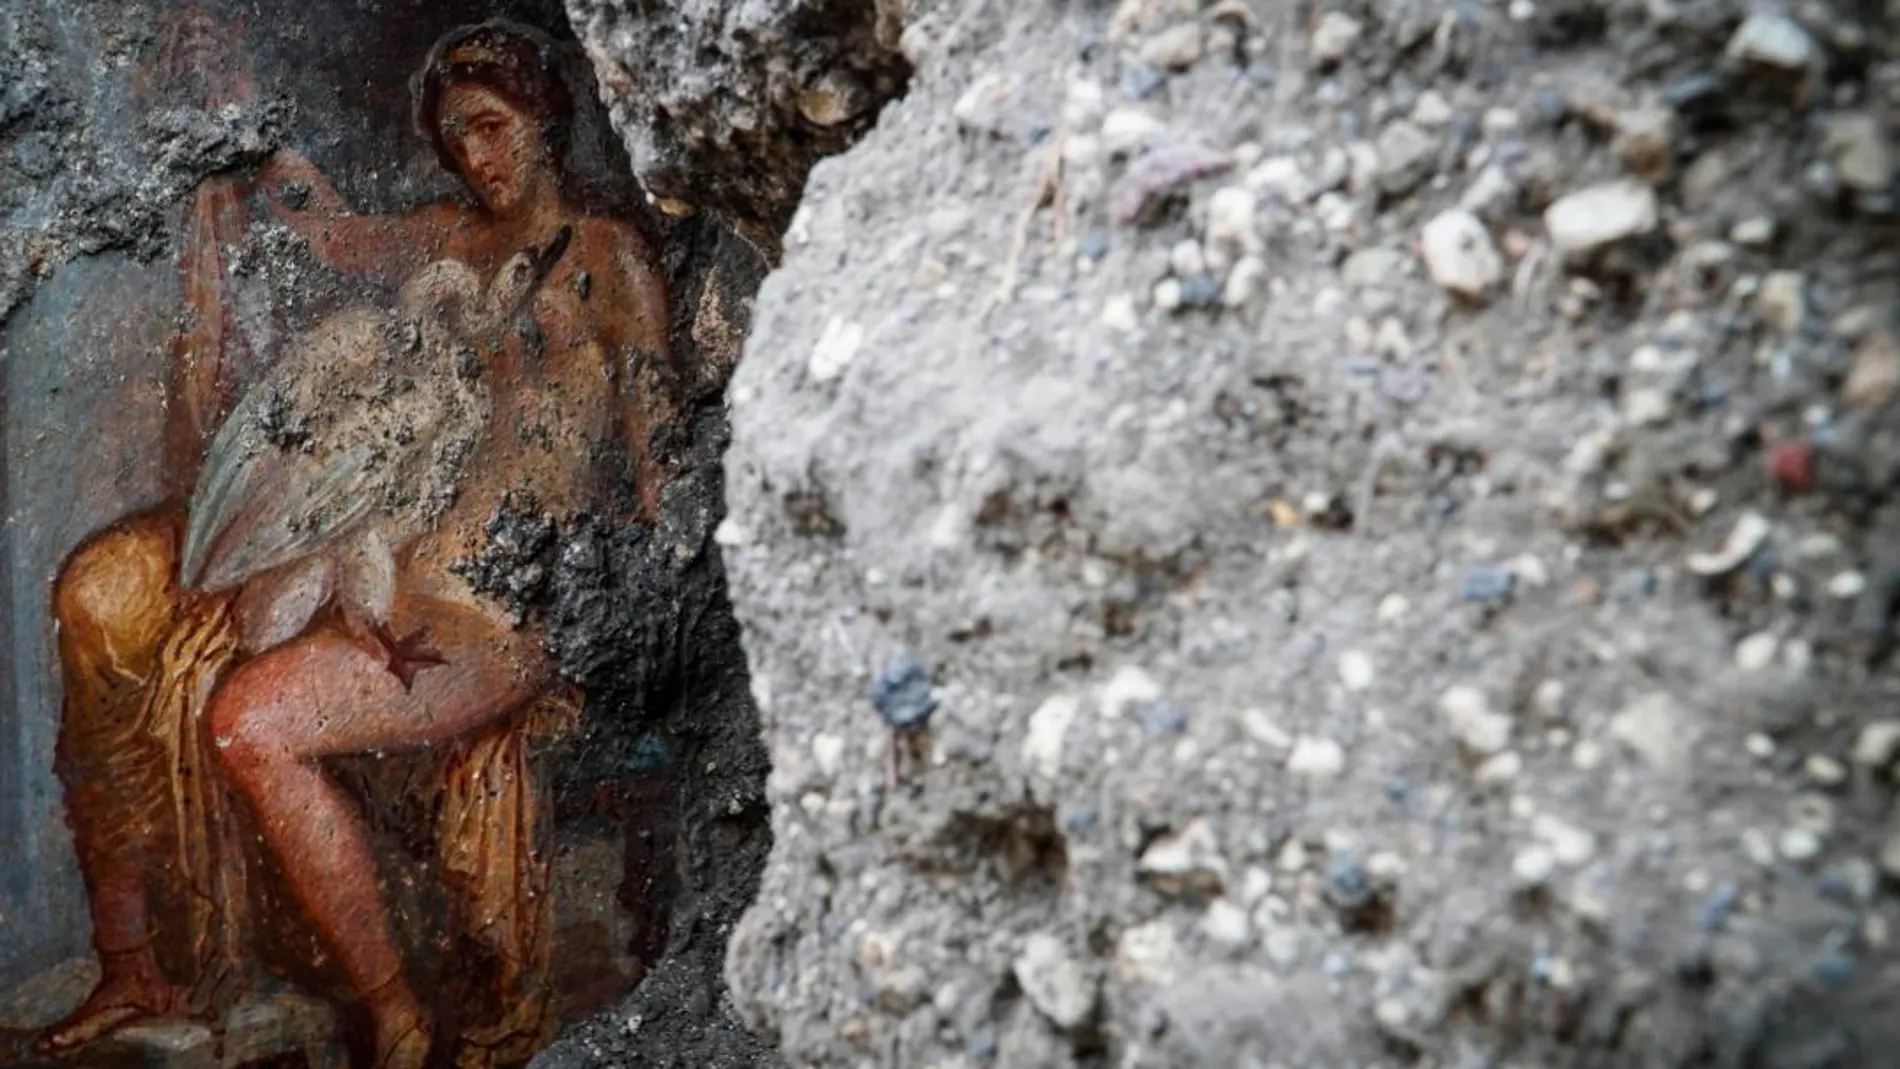 Vista del fresco "Leda e il cigno"(Leda y el cisne), descubierto recientemente en el área "Regio V", del Parque Arqueológico de Pompeya / Fotos: Efe